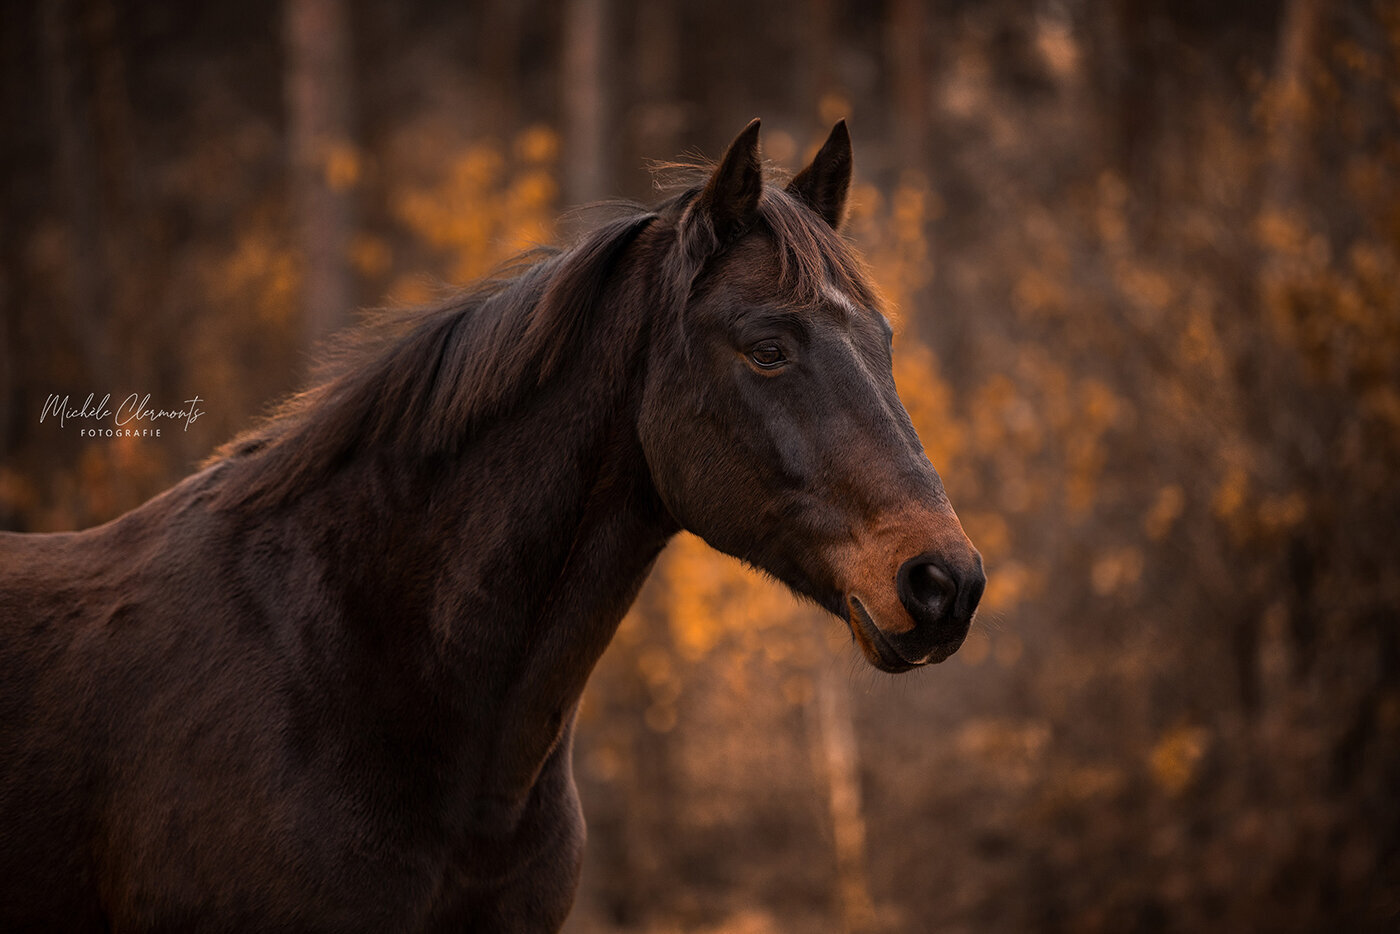 DSC_9292-paardenfotografie-michèle clermonts fotografie-low